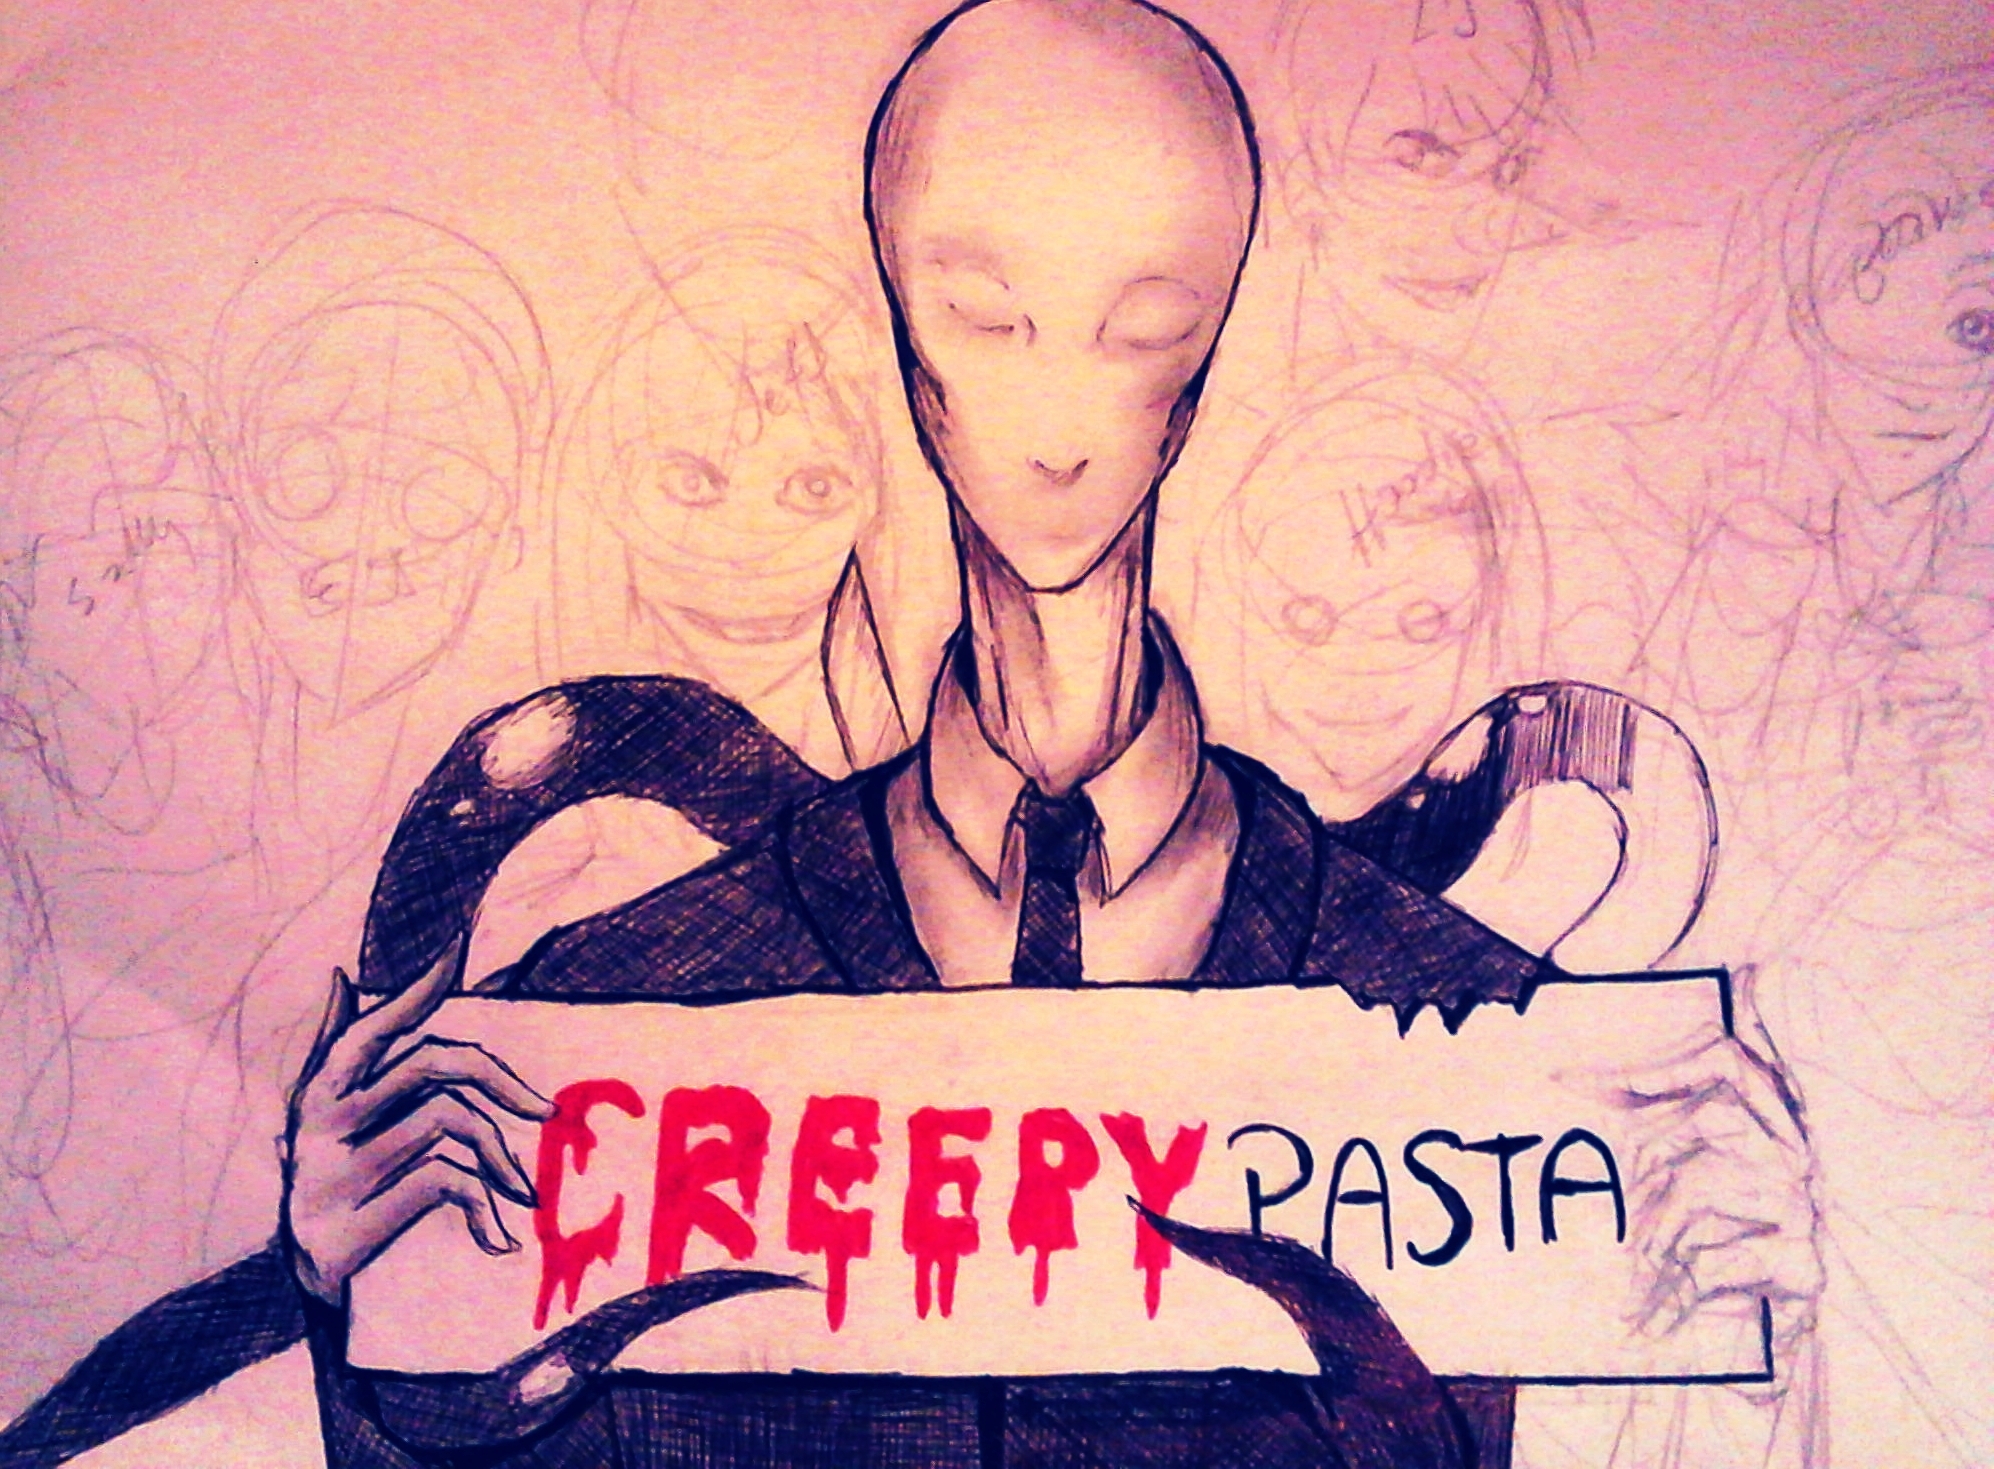 Creepypasta (WIP)